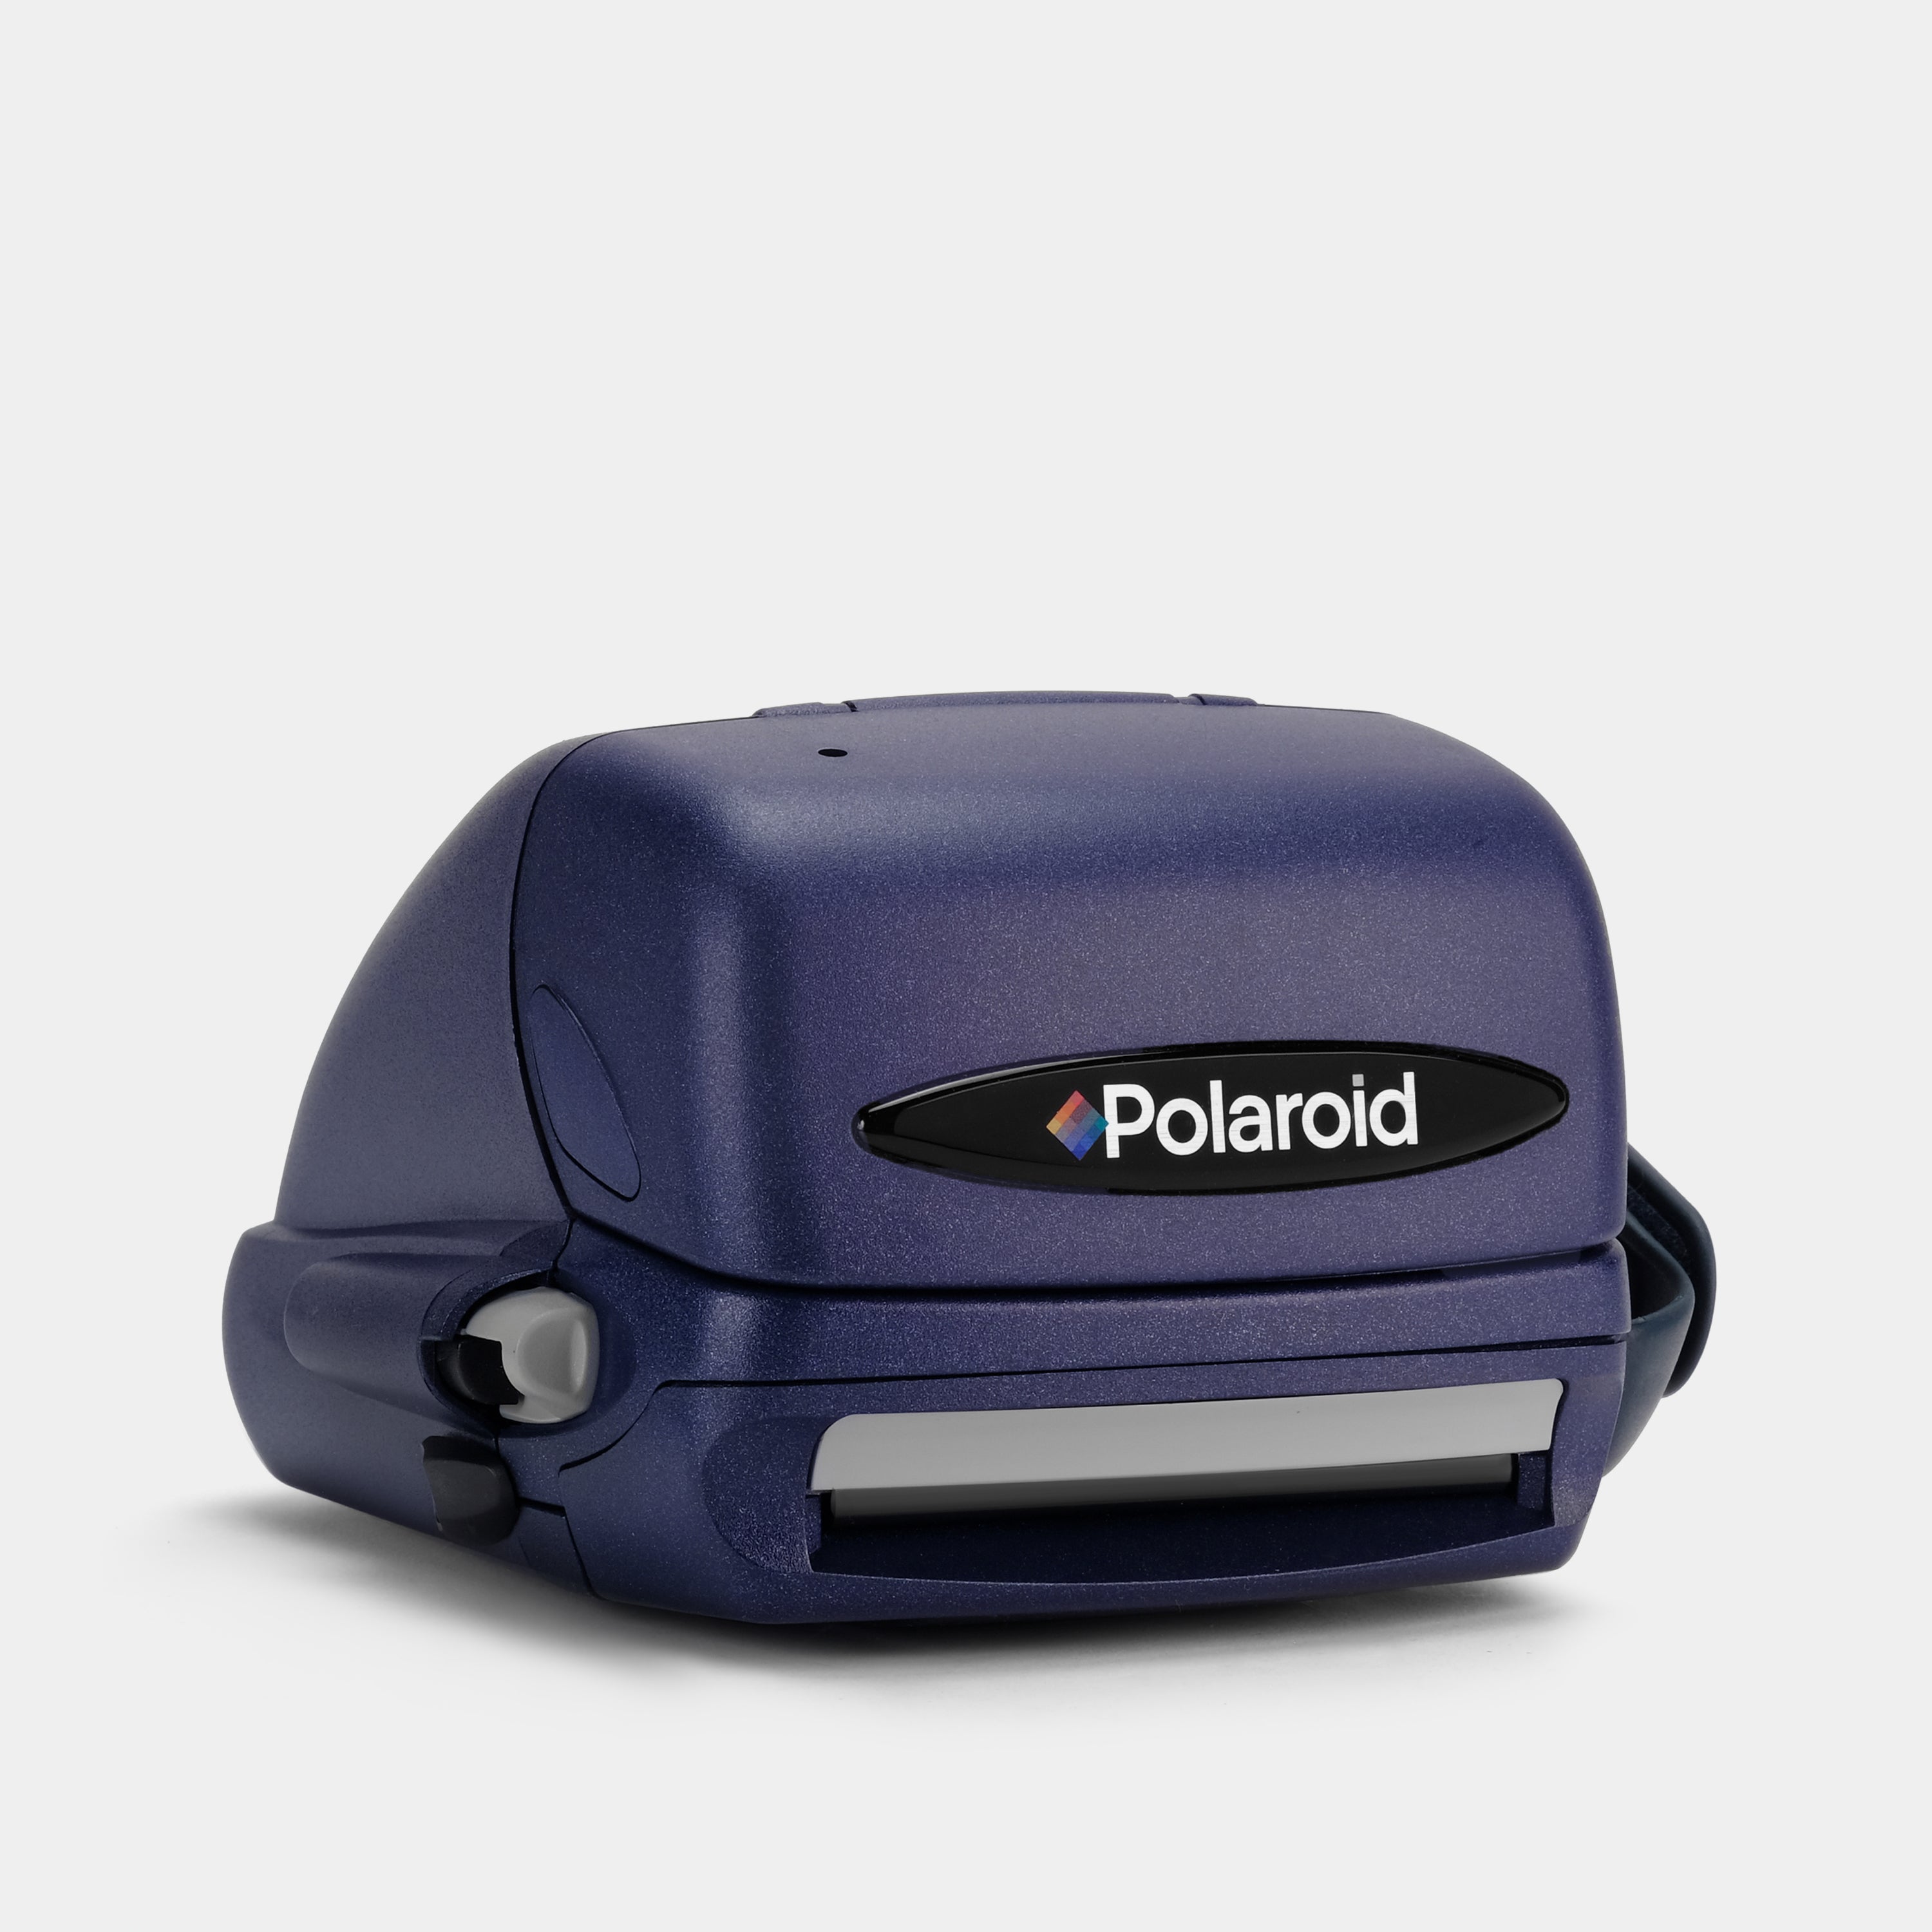 Polaroid 600 Express Autofocus Blue & Black Instant Film Camera